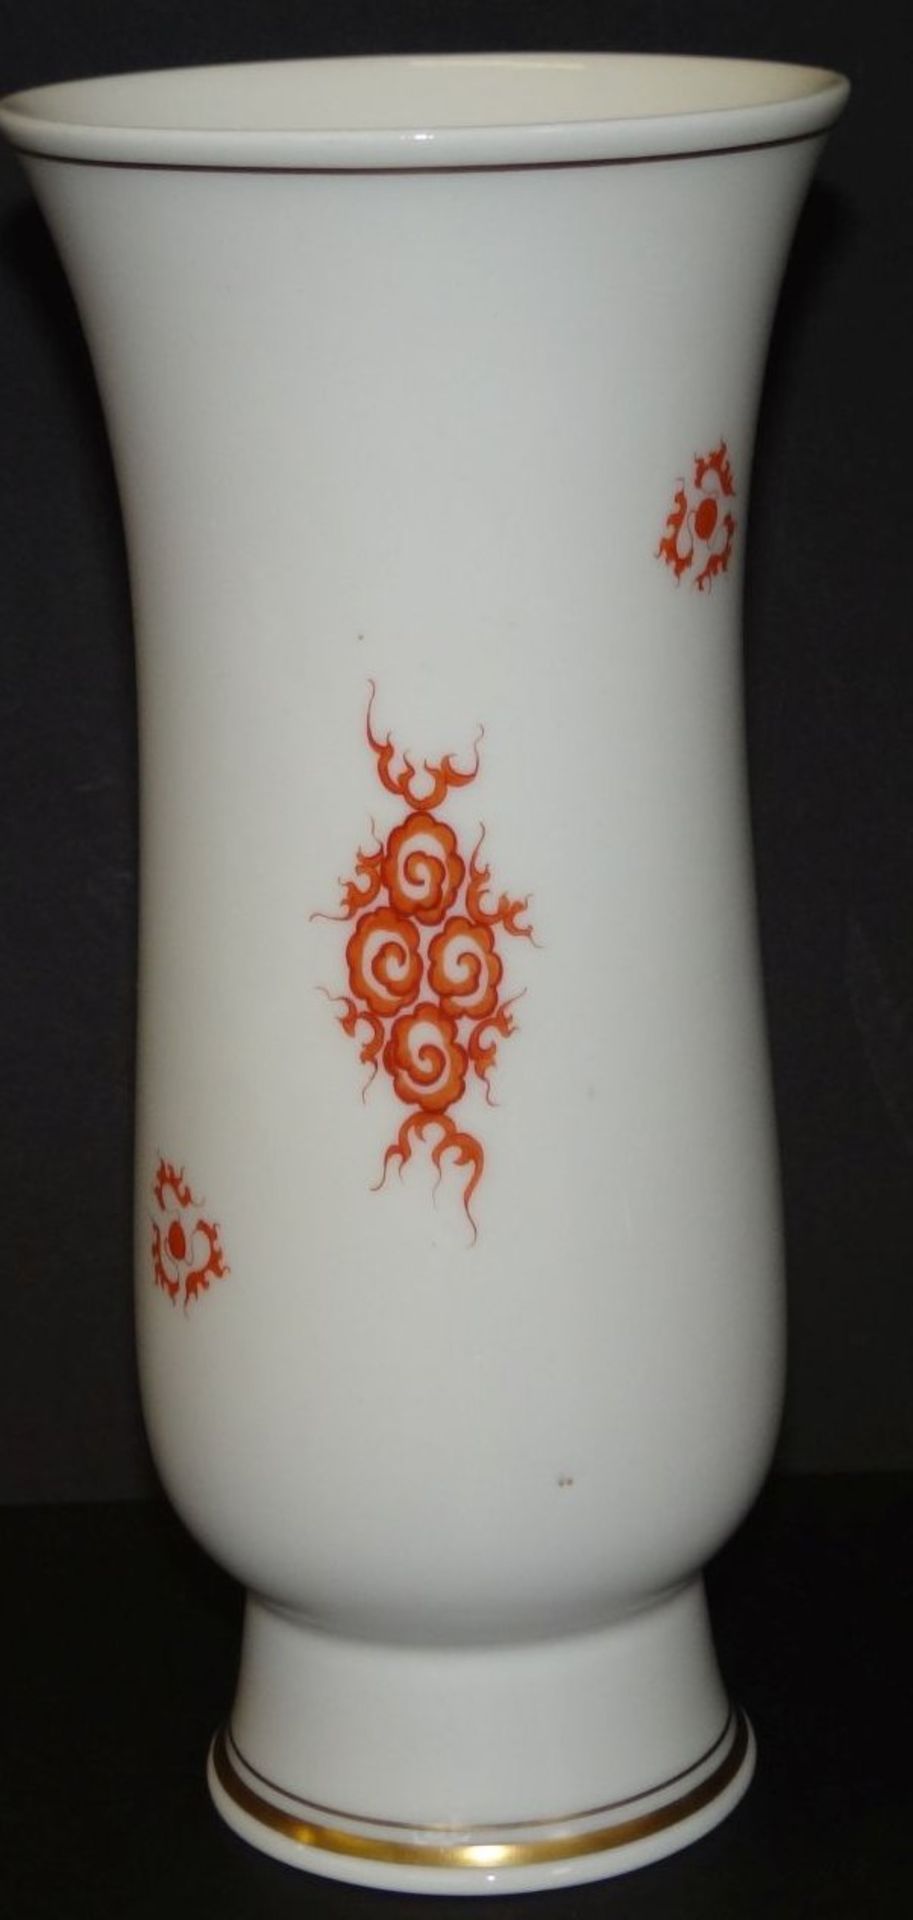 Vase "Meissen" roter Drache, H-20 cm, Schwertermarke durchschliffen - Bild 2 aus 4